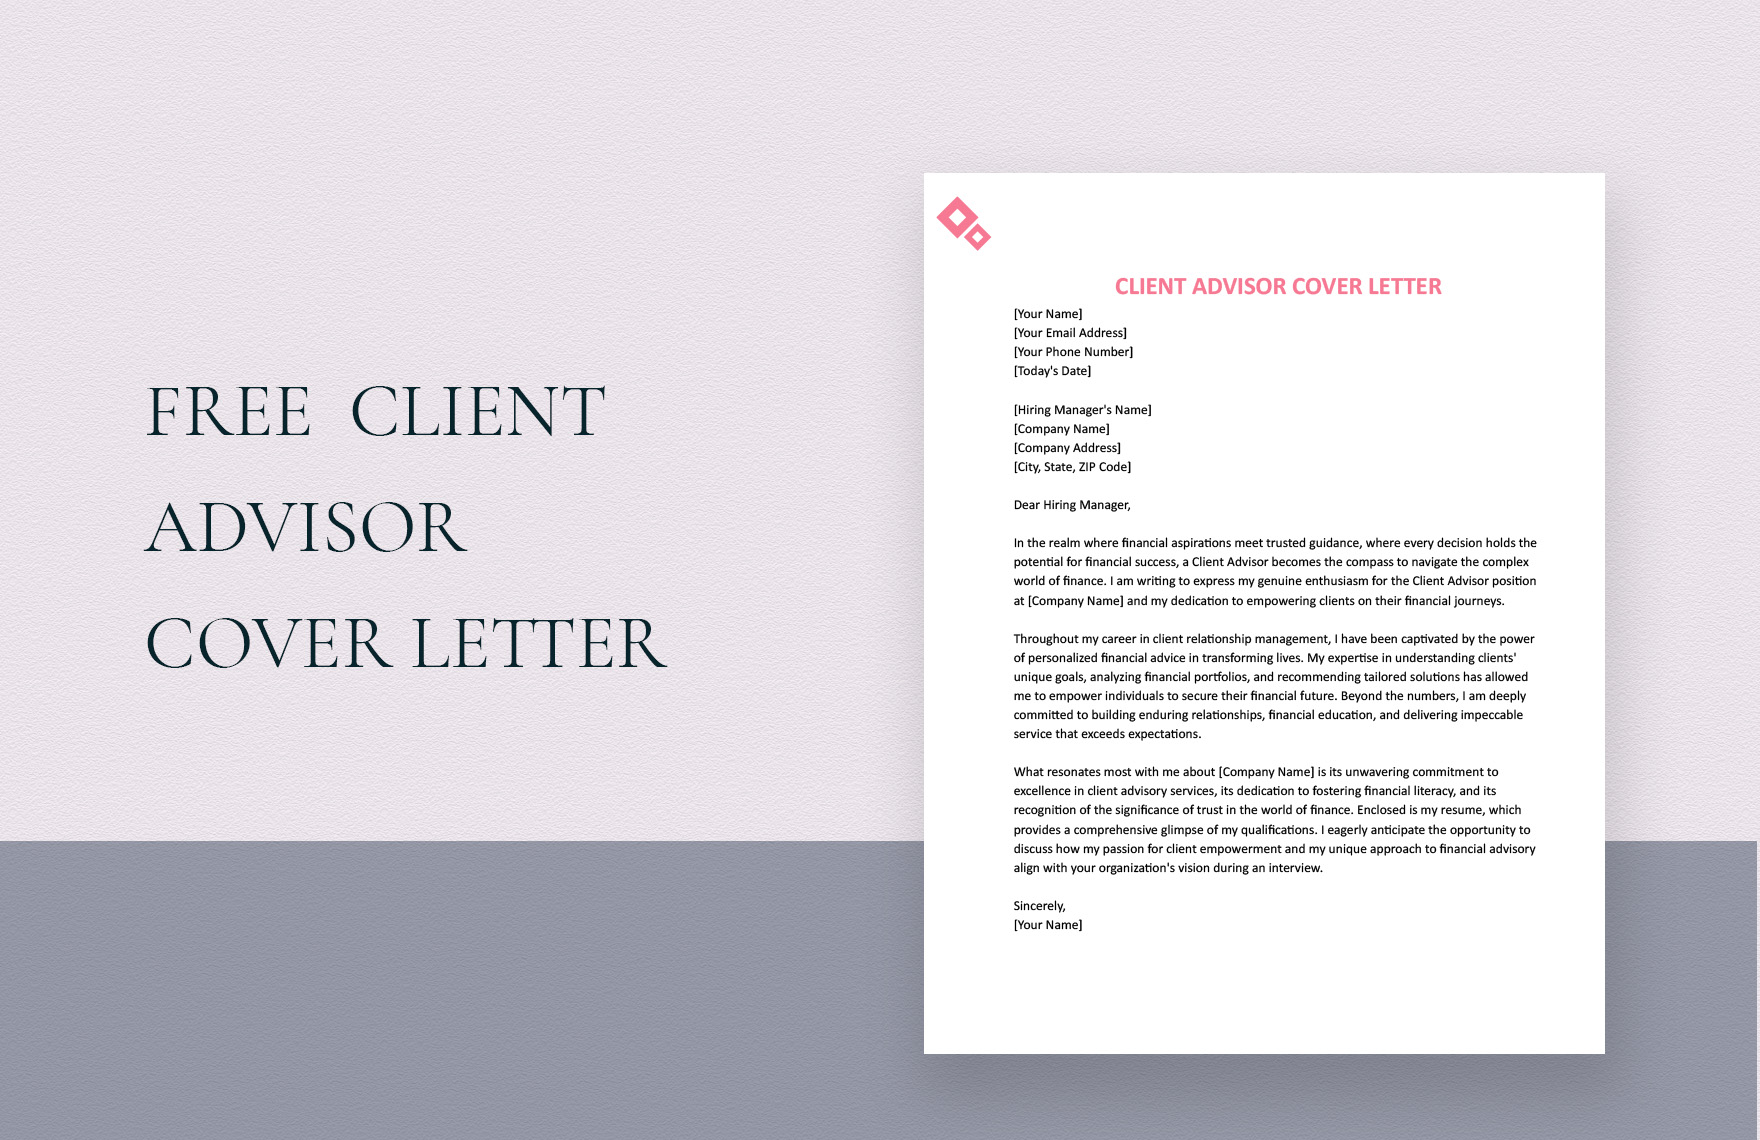 Client Advisor Cover Letter